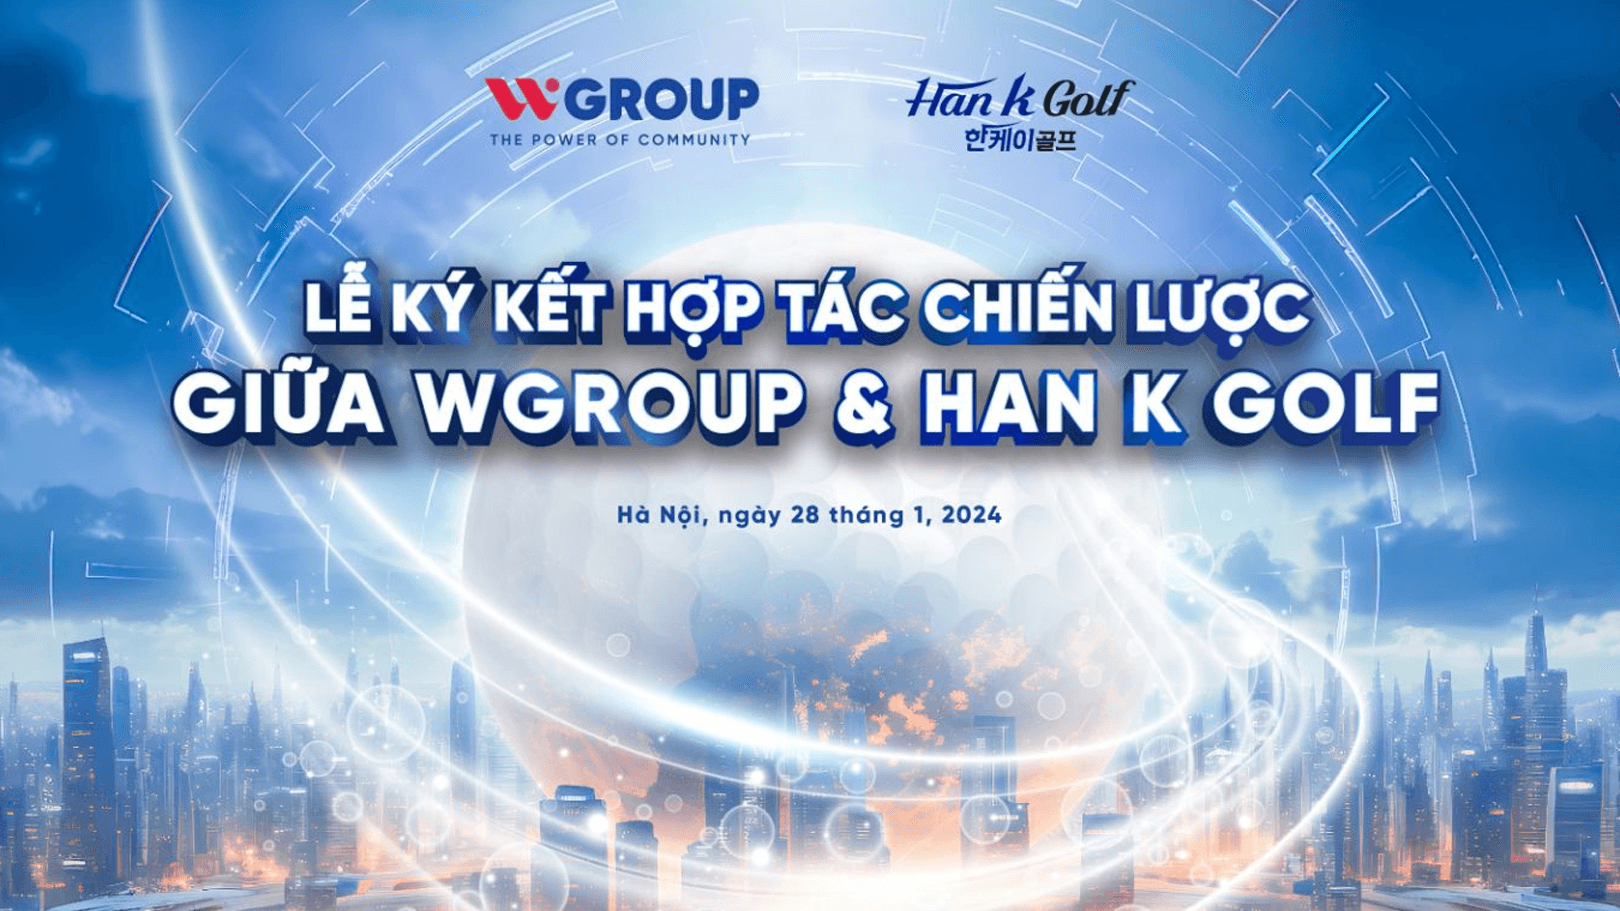 Tập đoàn WGroup, Công ty Du lịch VGolf Travel, Thời trang Handee và Han K Golf: Liên minh chiến lược nhằm mục tiêu phát triển golf Việt Nam - Hàn Quốc